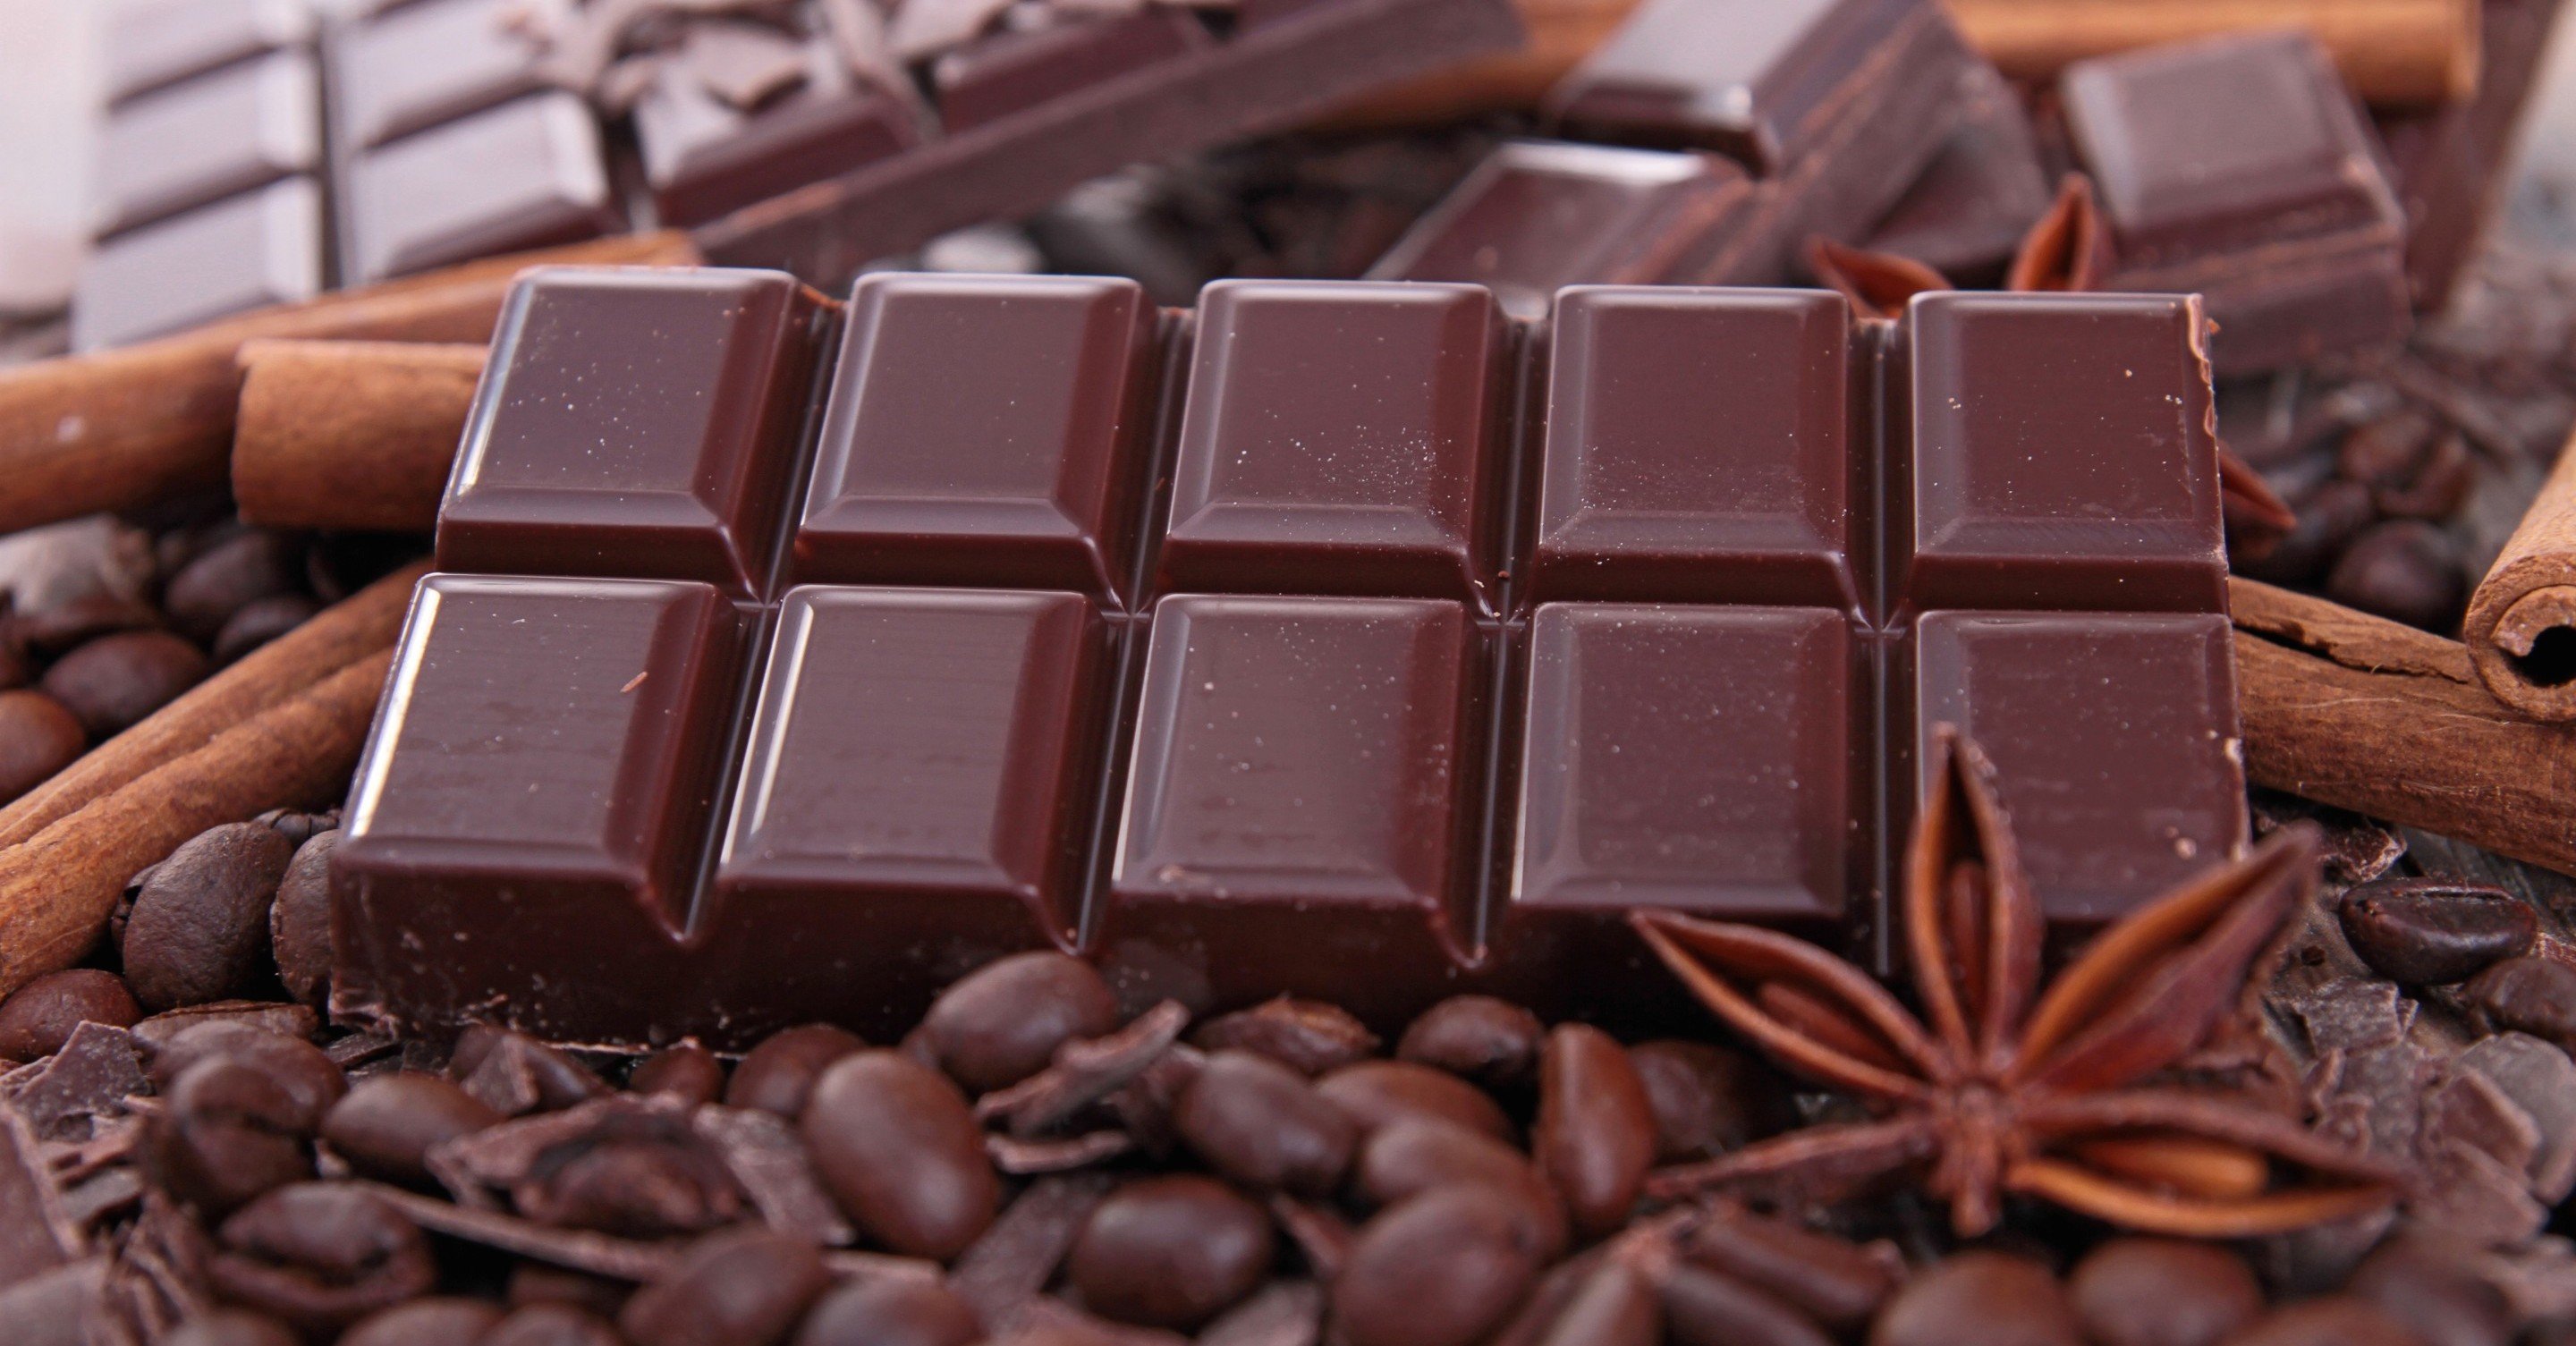 შოკოლადი დაგეხმარებათ შეინარჩუნოთ თქევნი კბილბის ჯანმრთელობა!